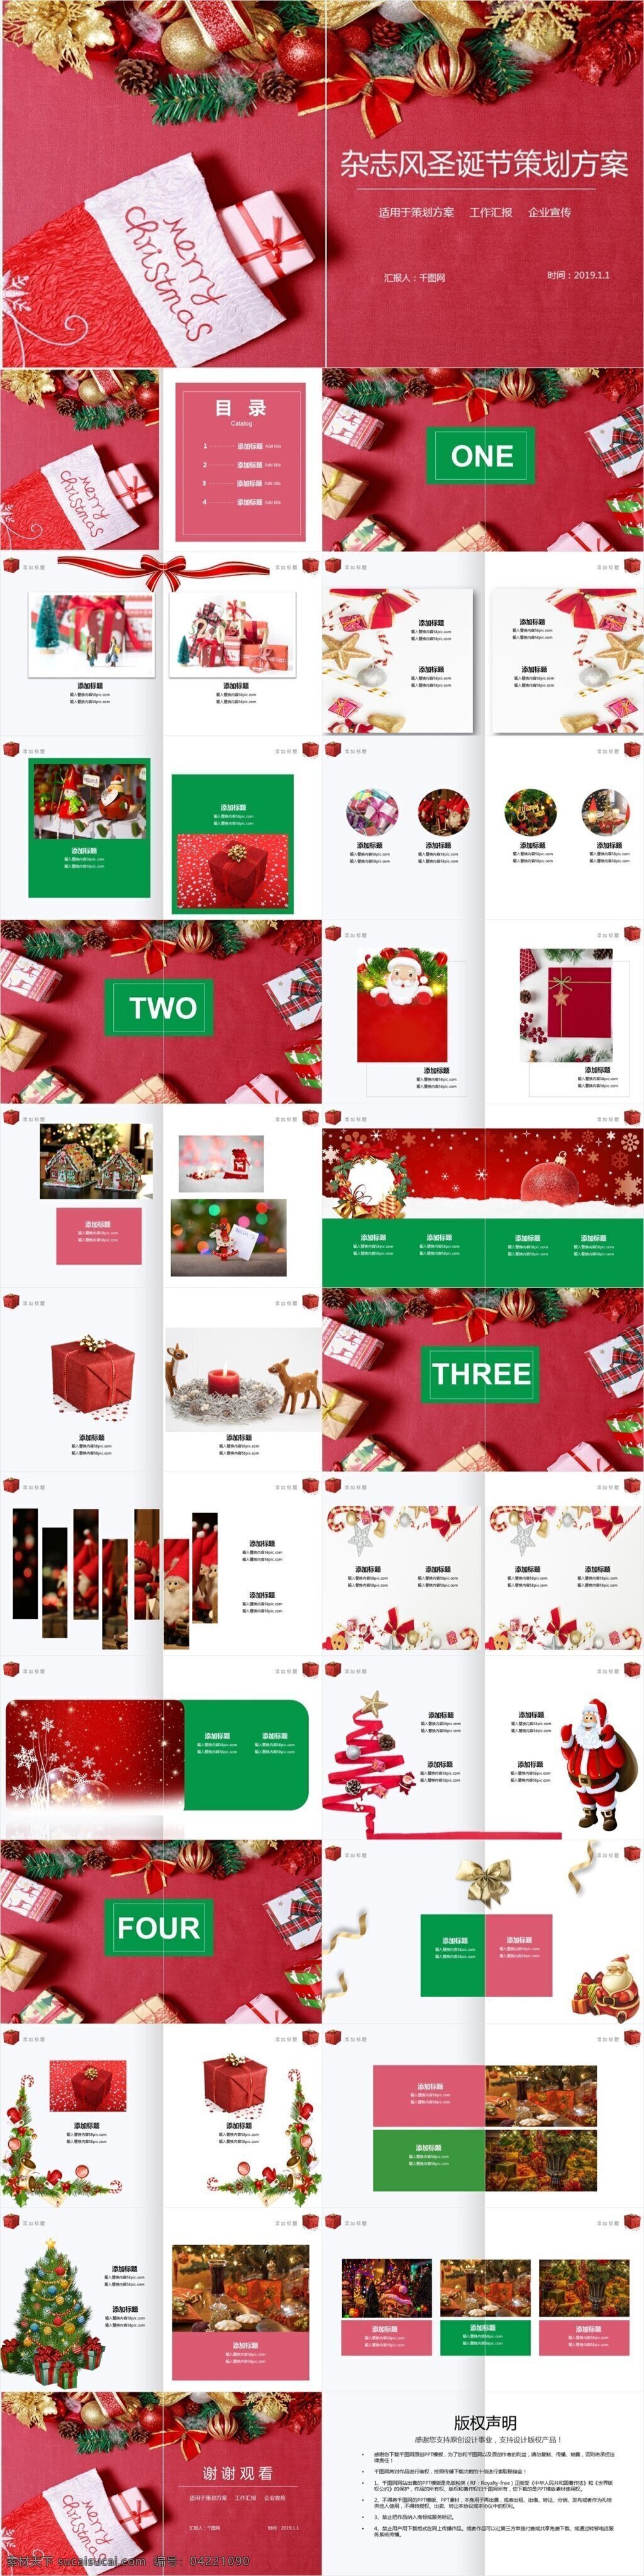 圣诞节 策划 方案 活动策划 模板 杂志风 圣诞 策划方案 红绿 画册 圣诞节活动